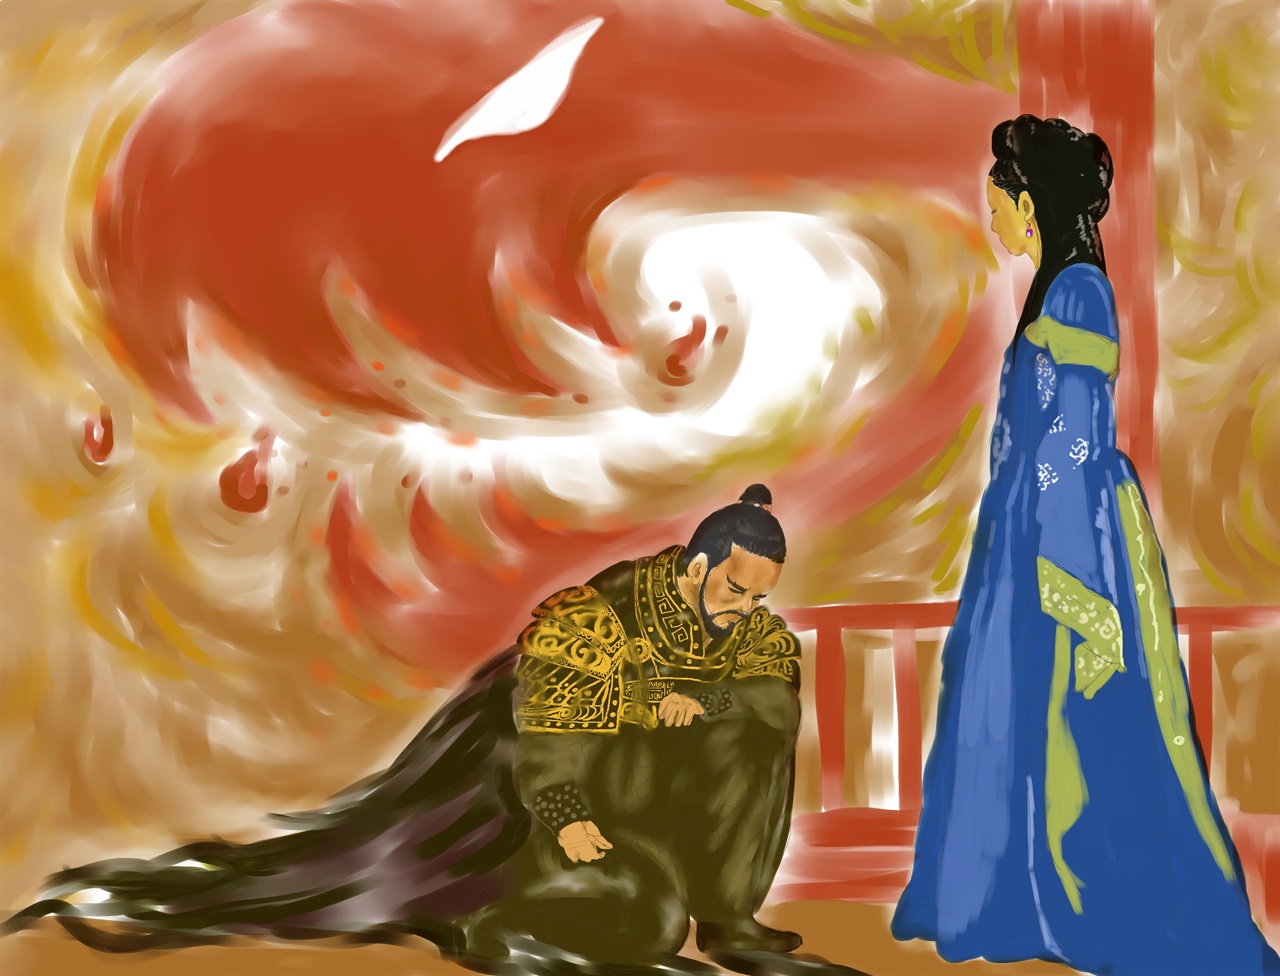 김유신을 궁궐로 불러 출정을 명령하는 진덕여왕의 모습을 작가의 상상력으로 그렸다.